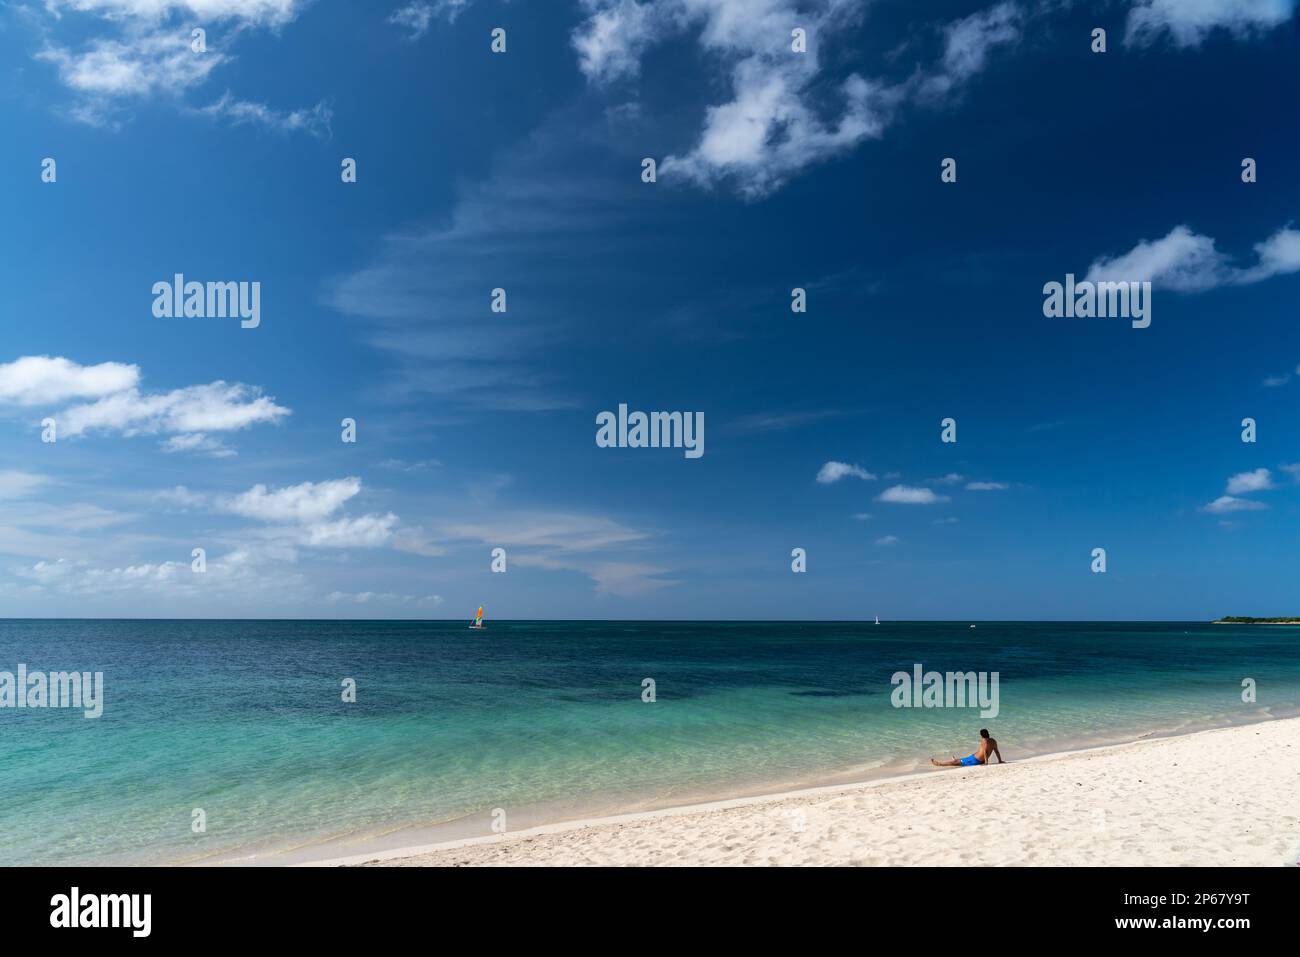 Un homme et sa plage de sable blanc, Trinidad, Cuba, Antilles, Caraïbes, Amérique centrale Banque D'Images